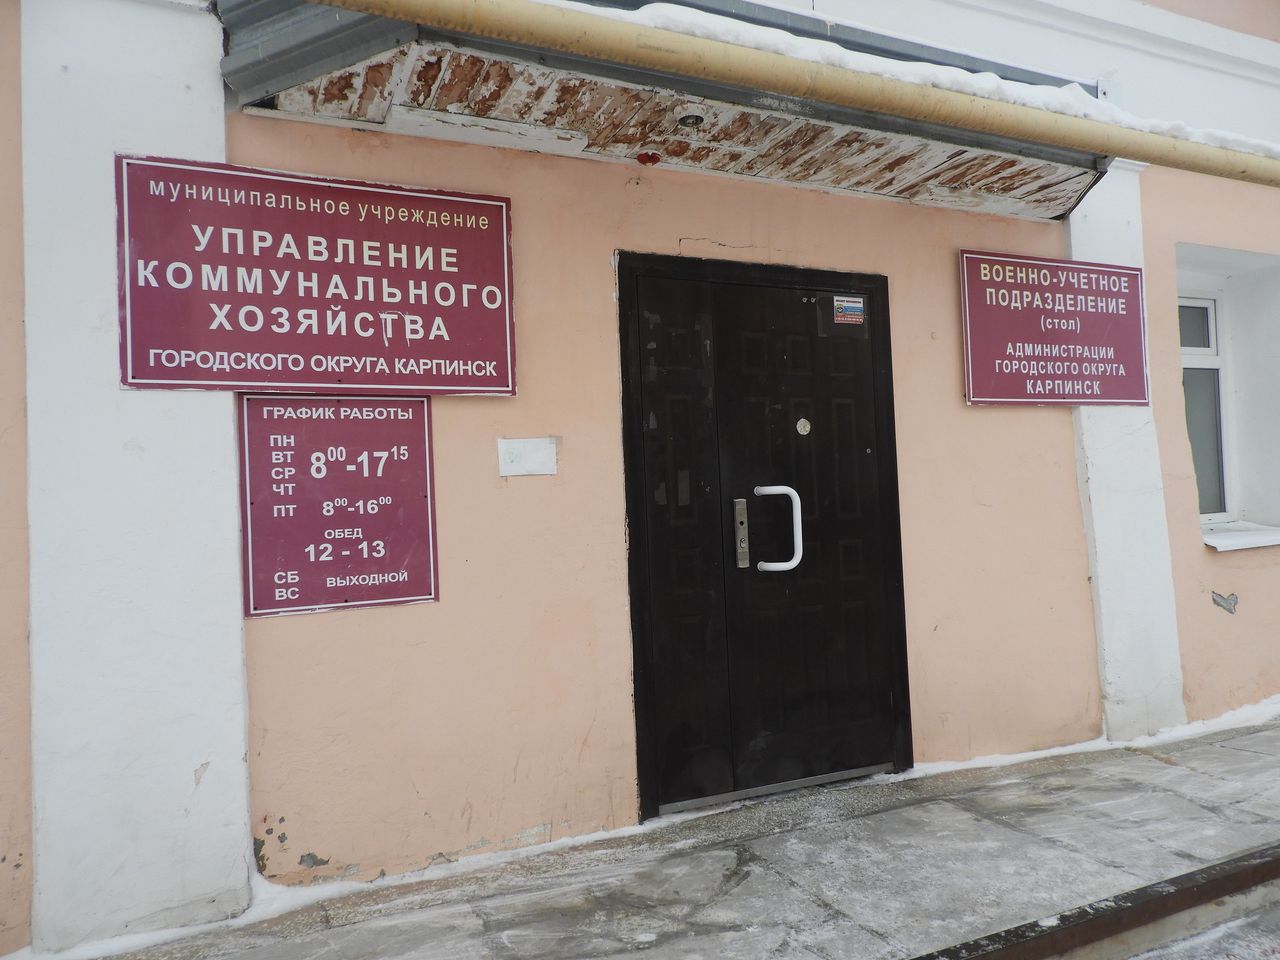 Сотрудники МКУ "УКХ" похитили 30 миллионов рублей, а глава города и директор говорят, что не в курсе